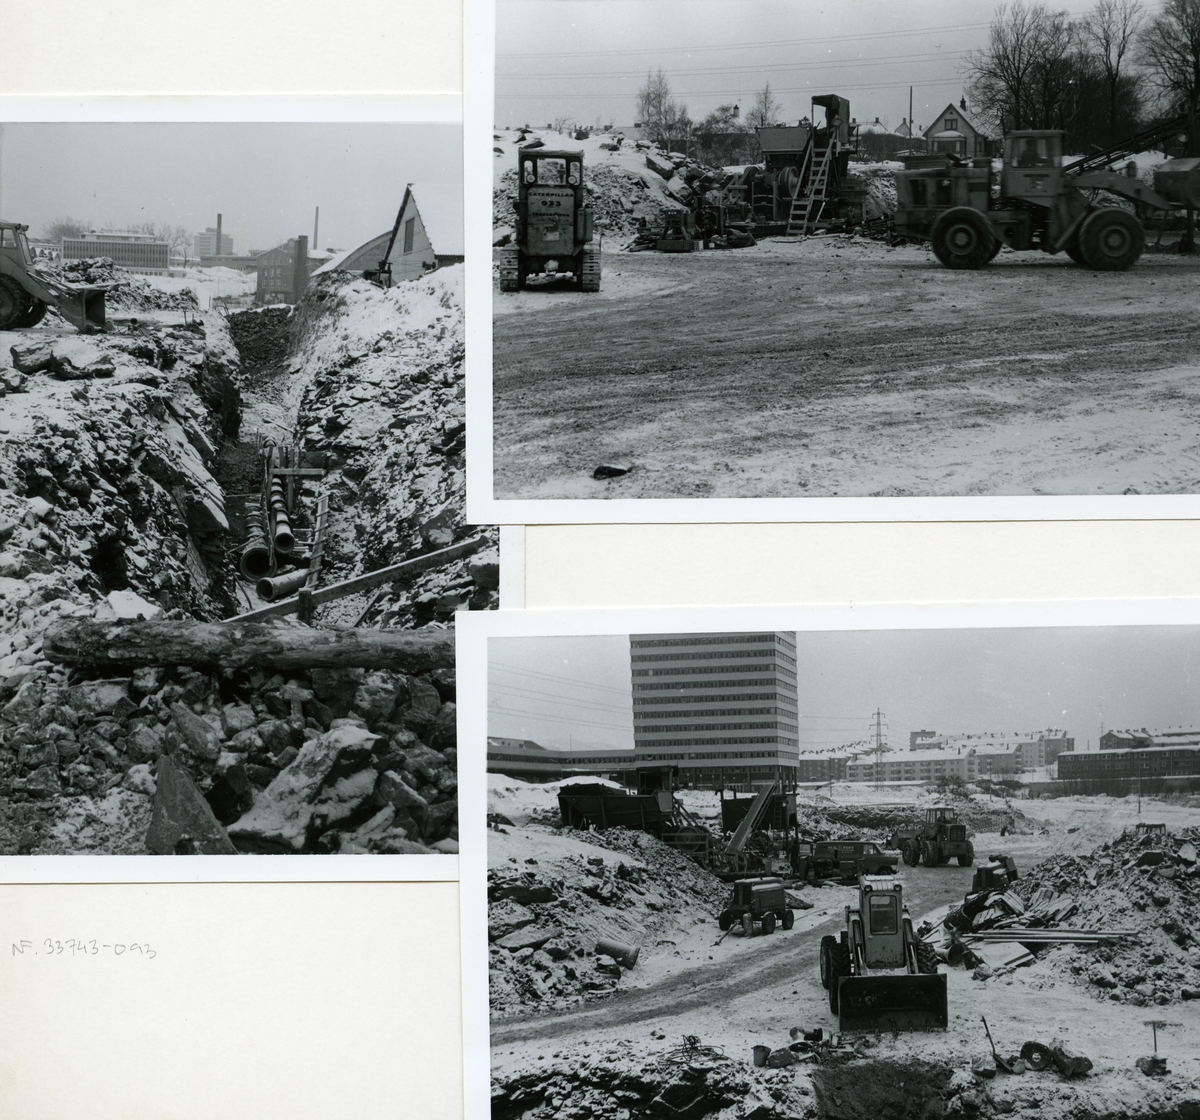 Byggeplass.Konstruksjon av Tiedemanns Tobaksfabrik på Hovin i 1967. Et montasje av tre fotografier som viser gravemaskiner i arbeid på byggeplassen.